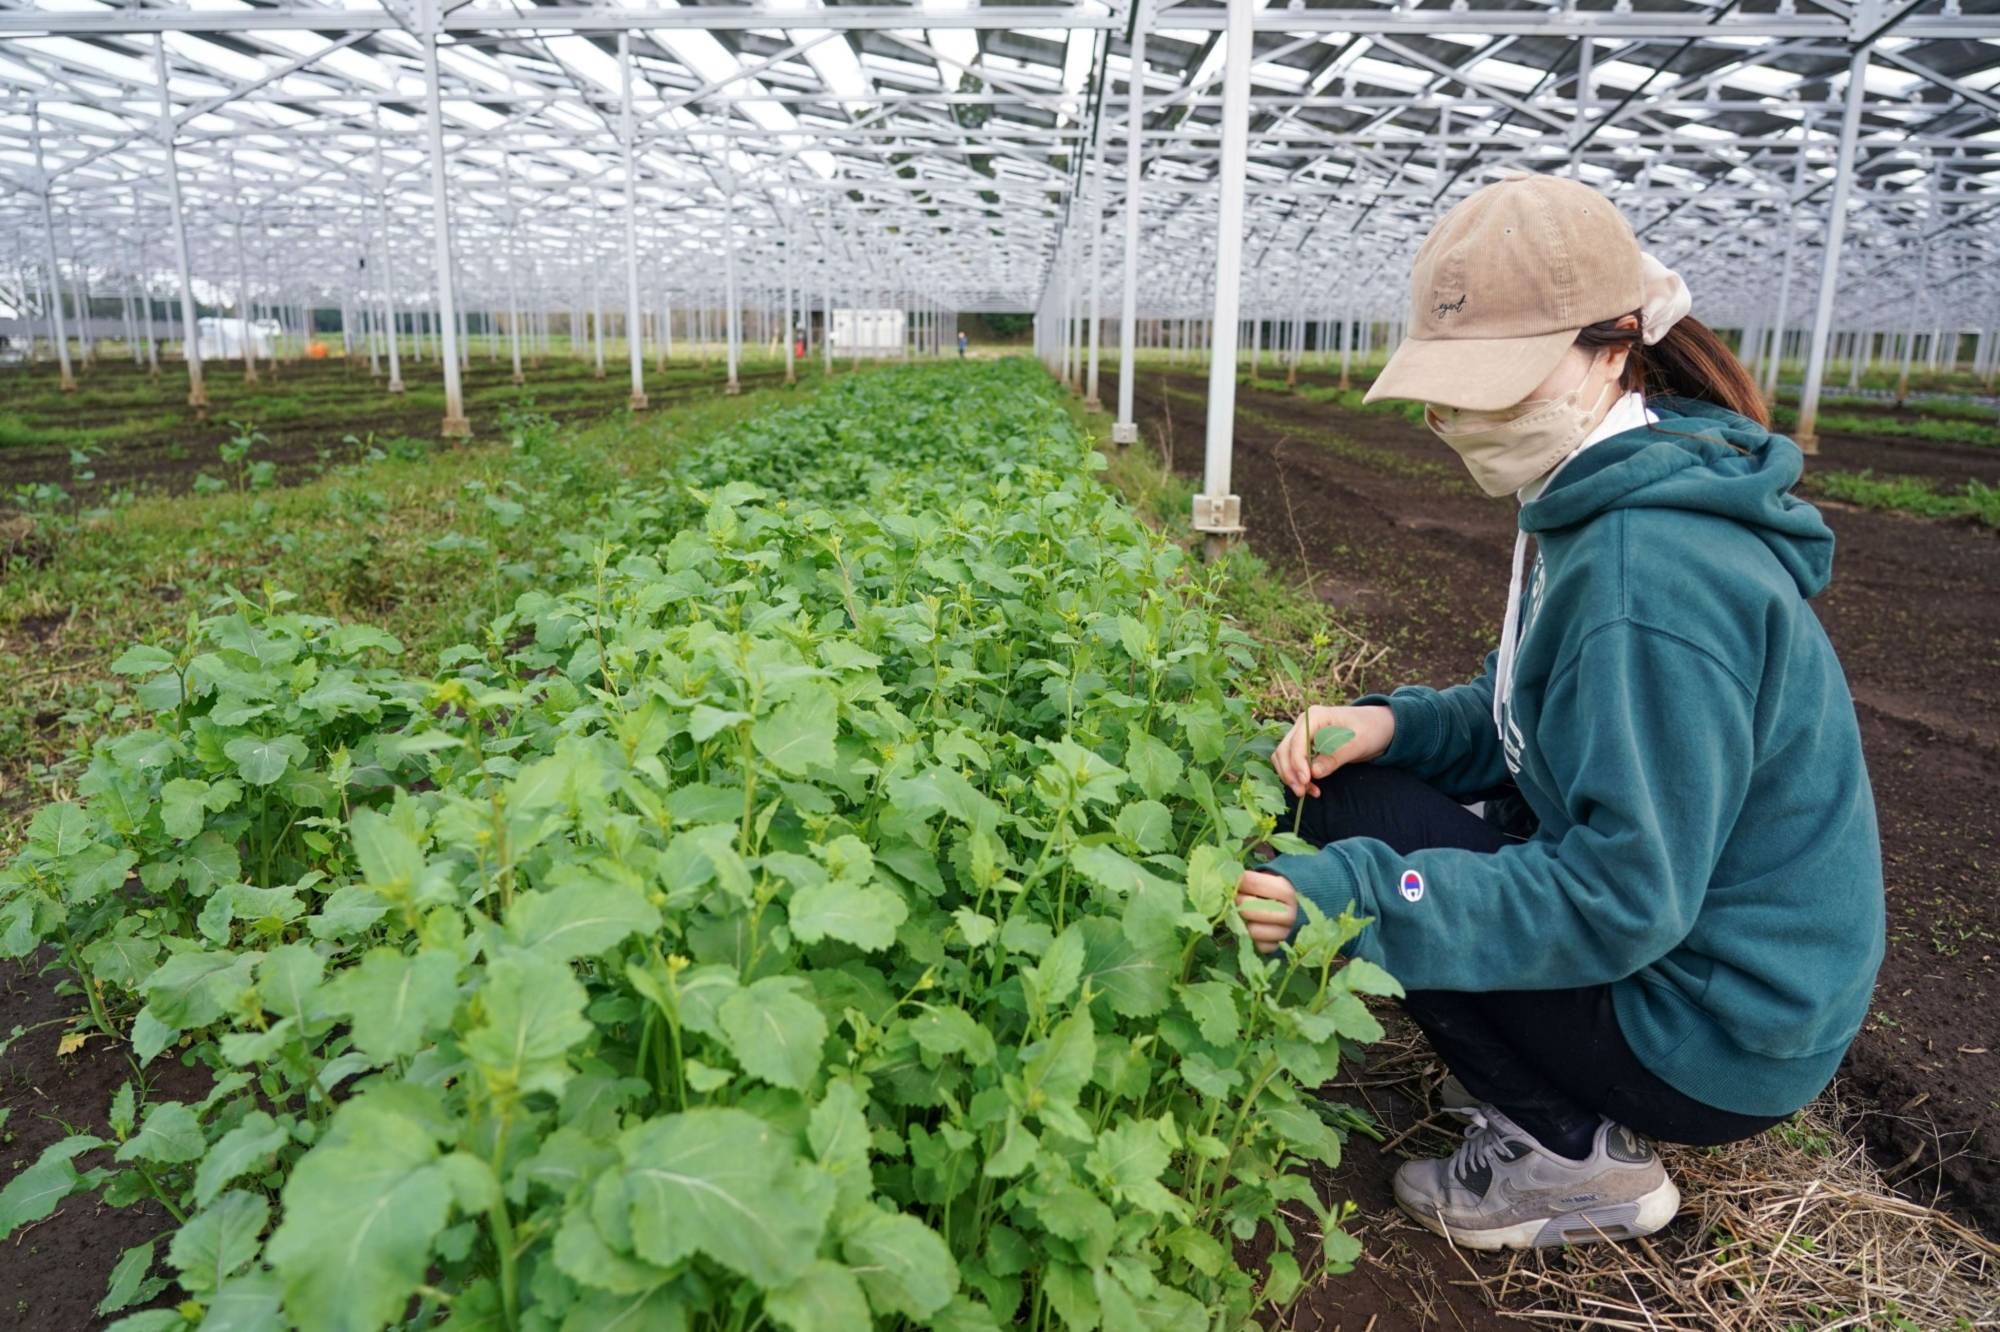 Một nhân viên kiểm tra rau cải.  Trong khi các tấm pin mặt trời có thể là một triển vọng hấp dẫn để có thêm thu nhập, Bộ Nông nghiệp Nhật Bản muốn đảm bảo an ninh lương thực vẫn là ưu tiên hàng đầu.  |  BLOOMBERG